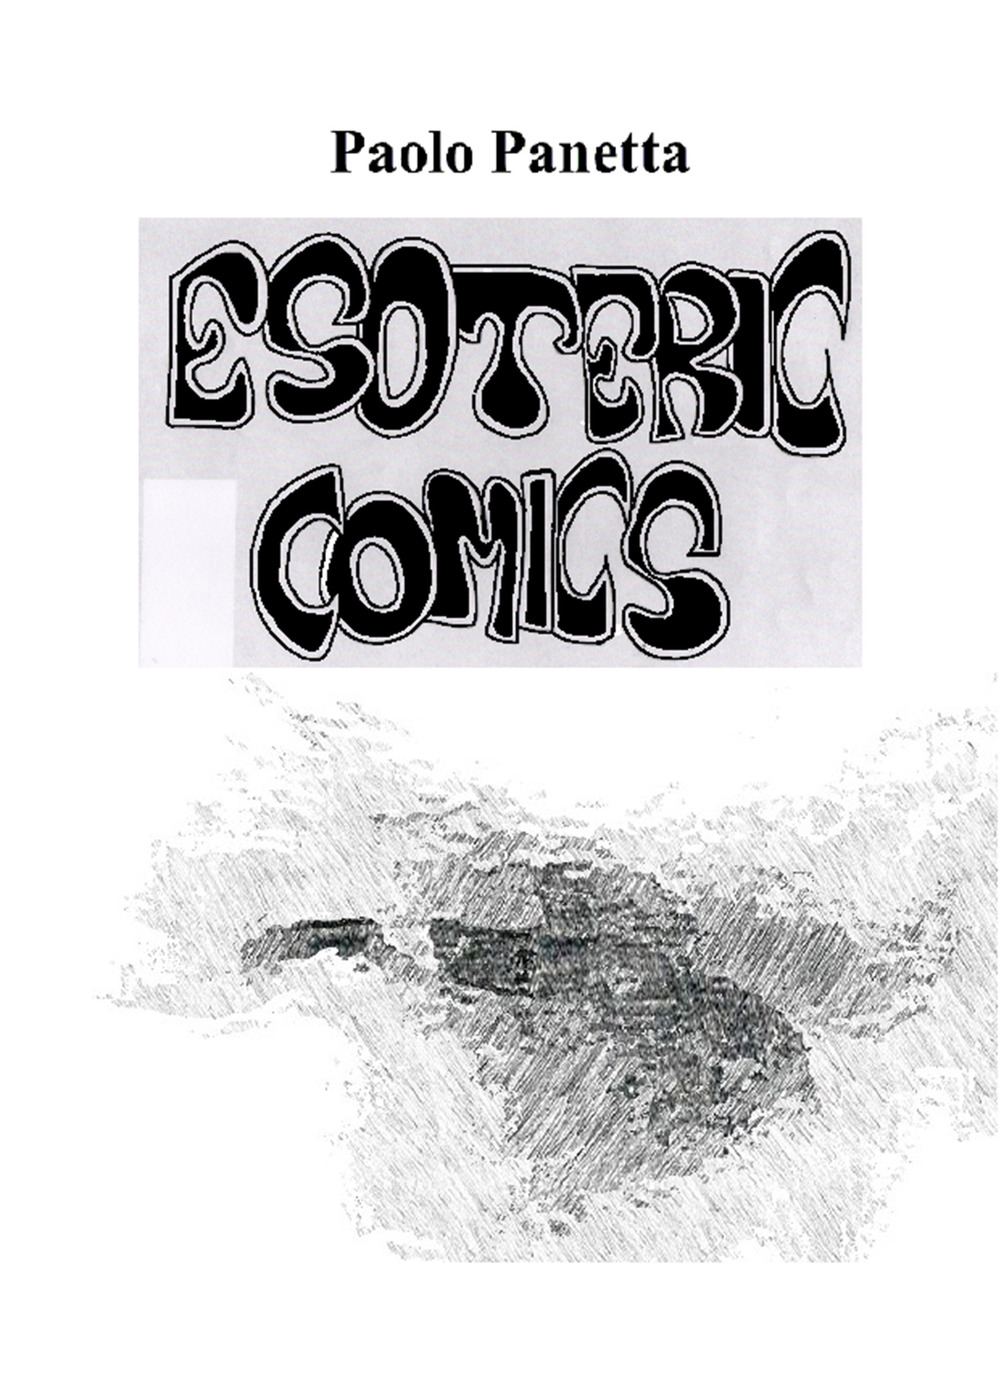 Esoteric comics